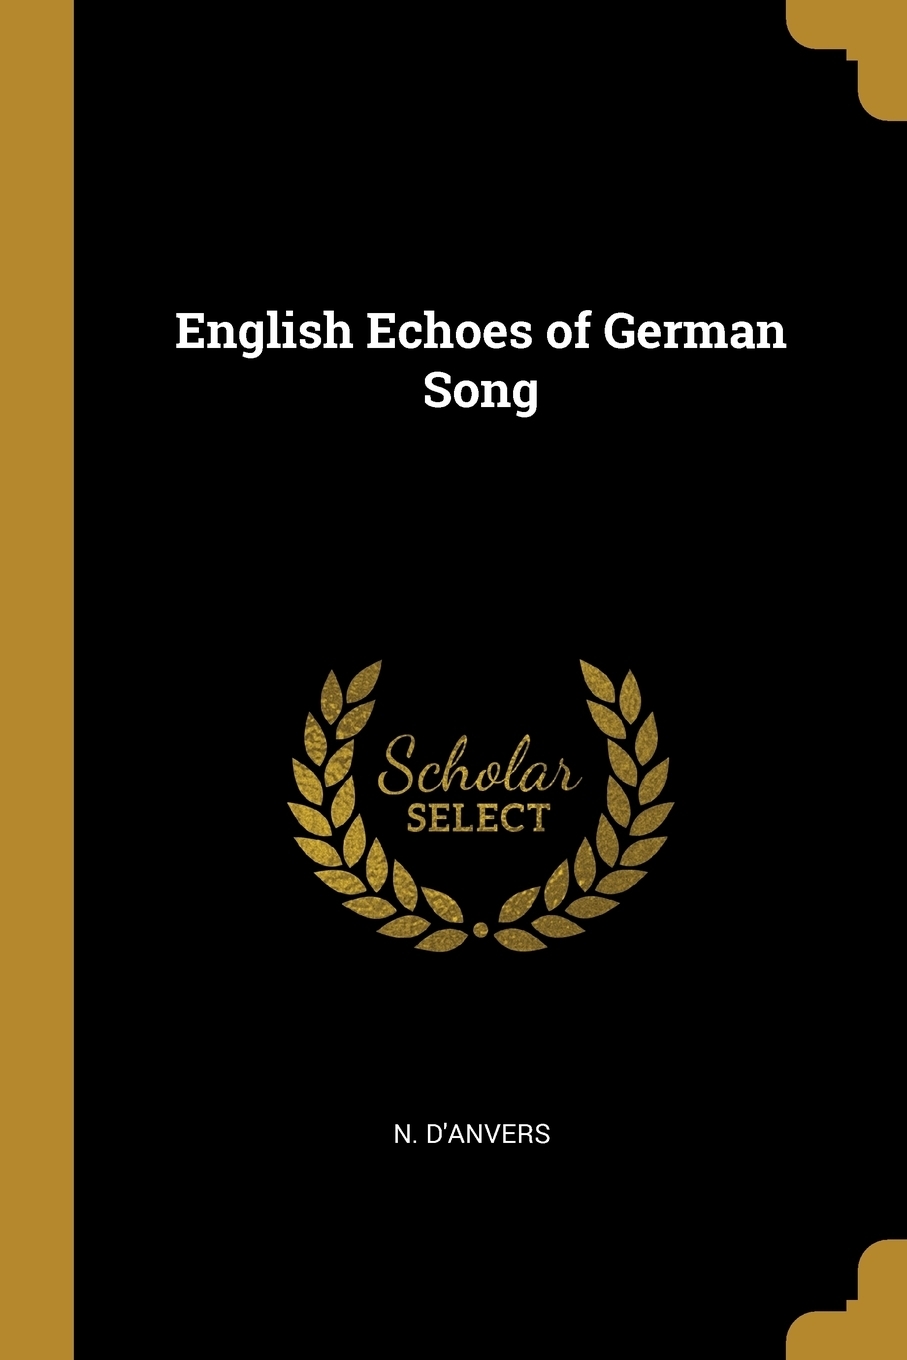 German Song